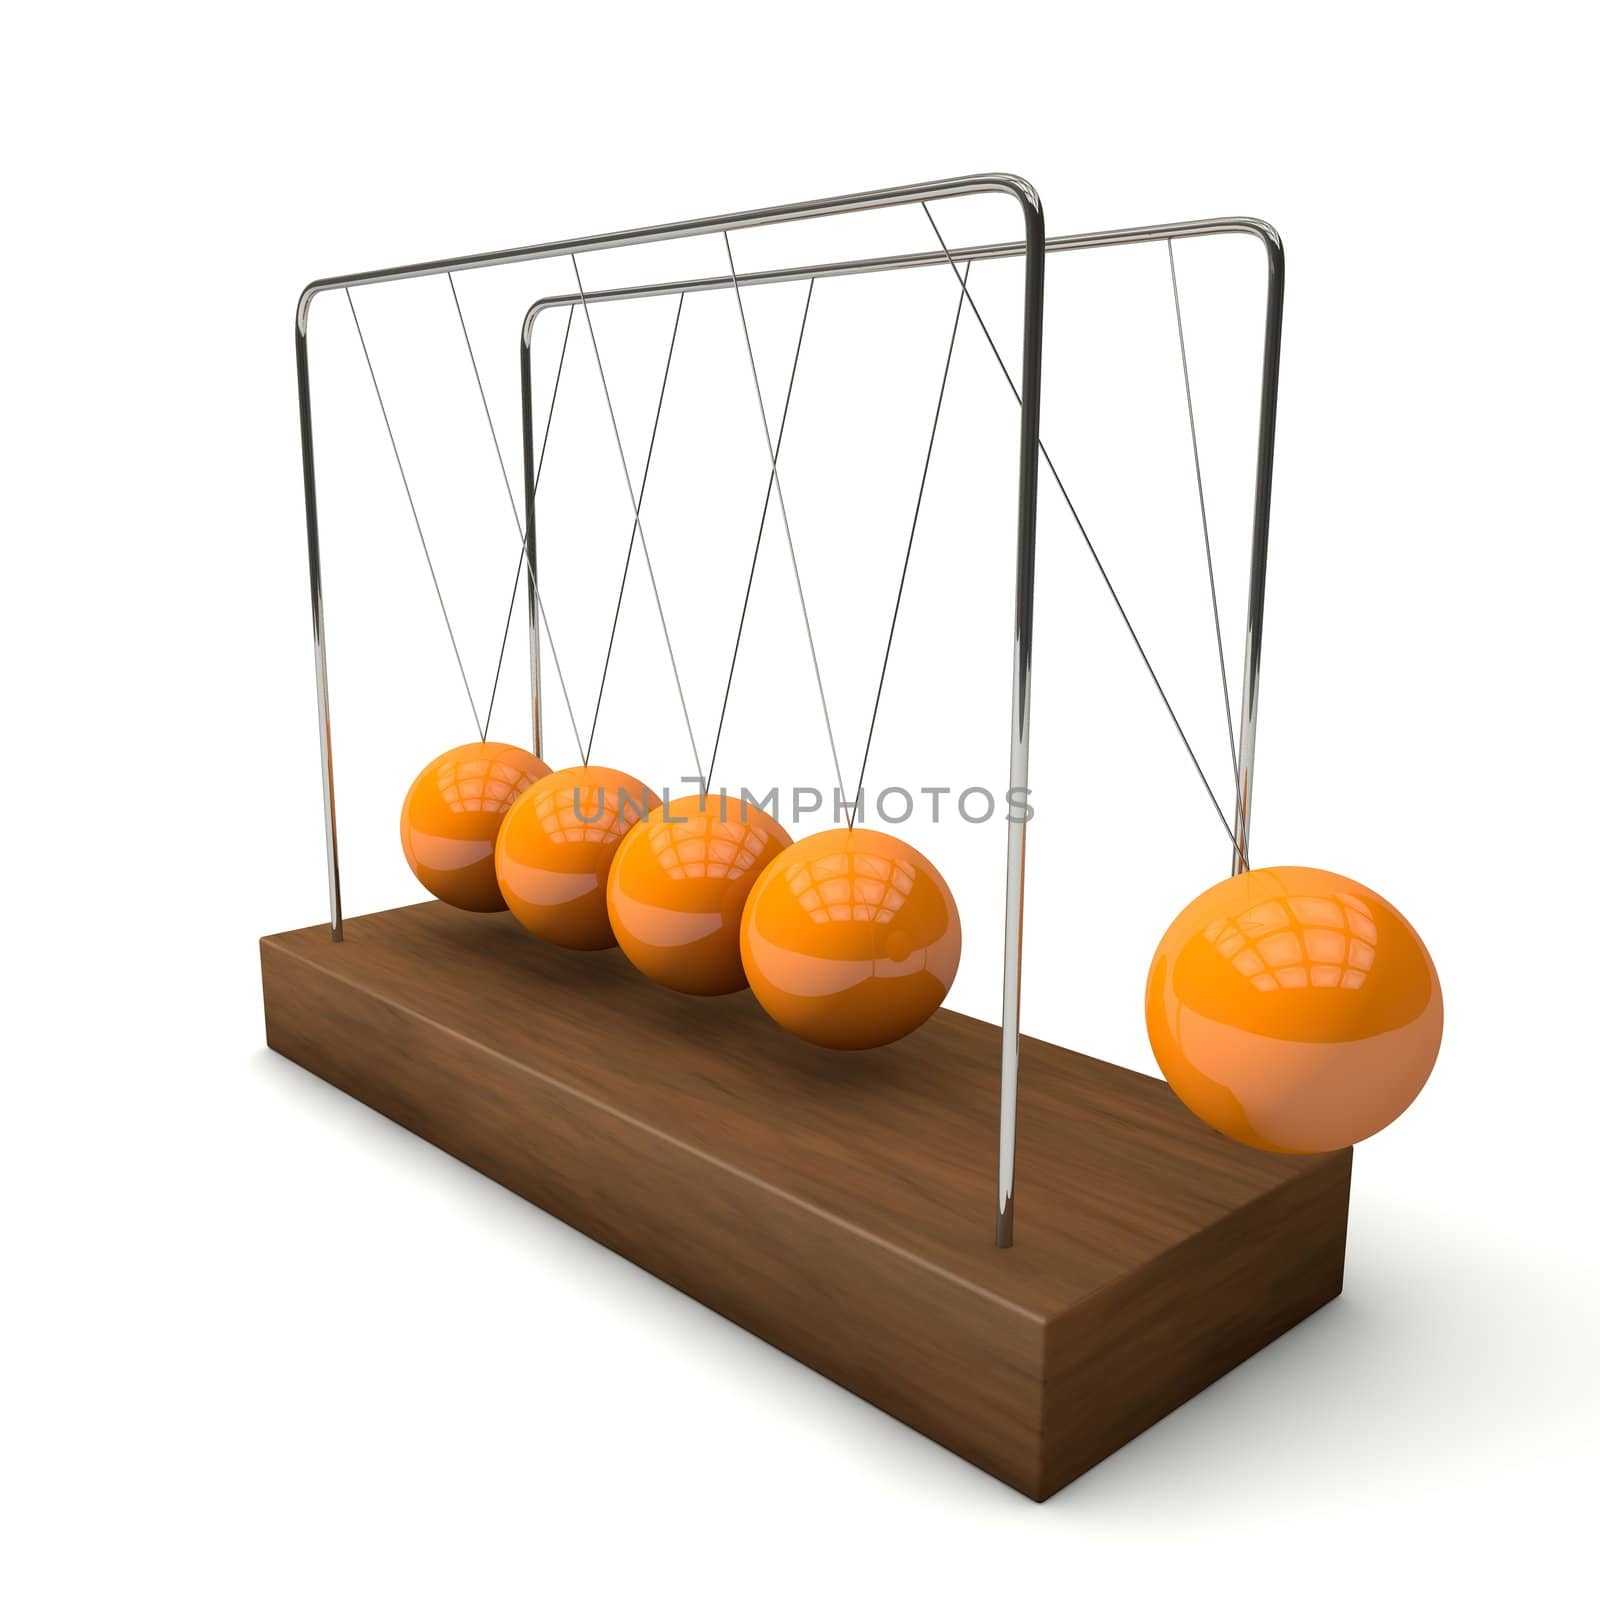 The pendulum in 3D by 3DAgentur